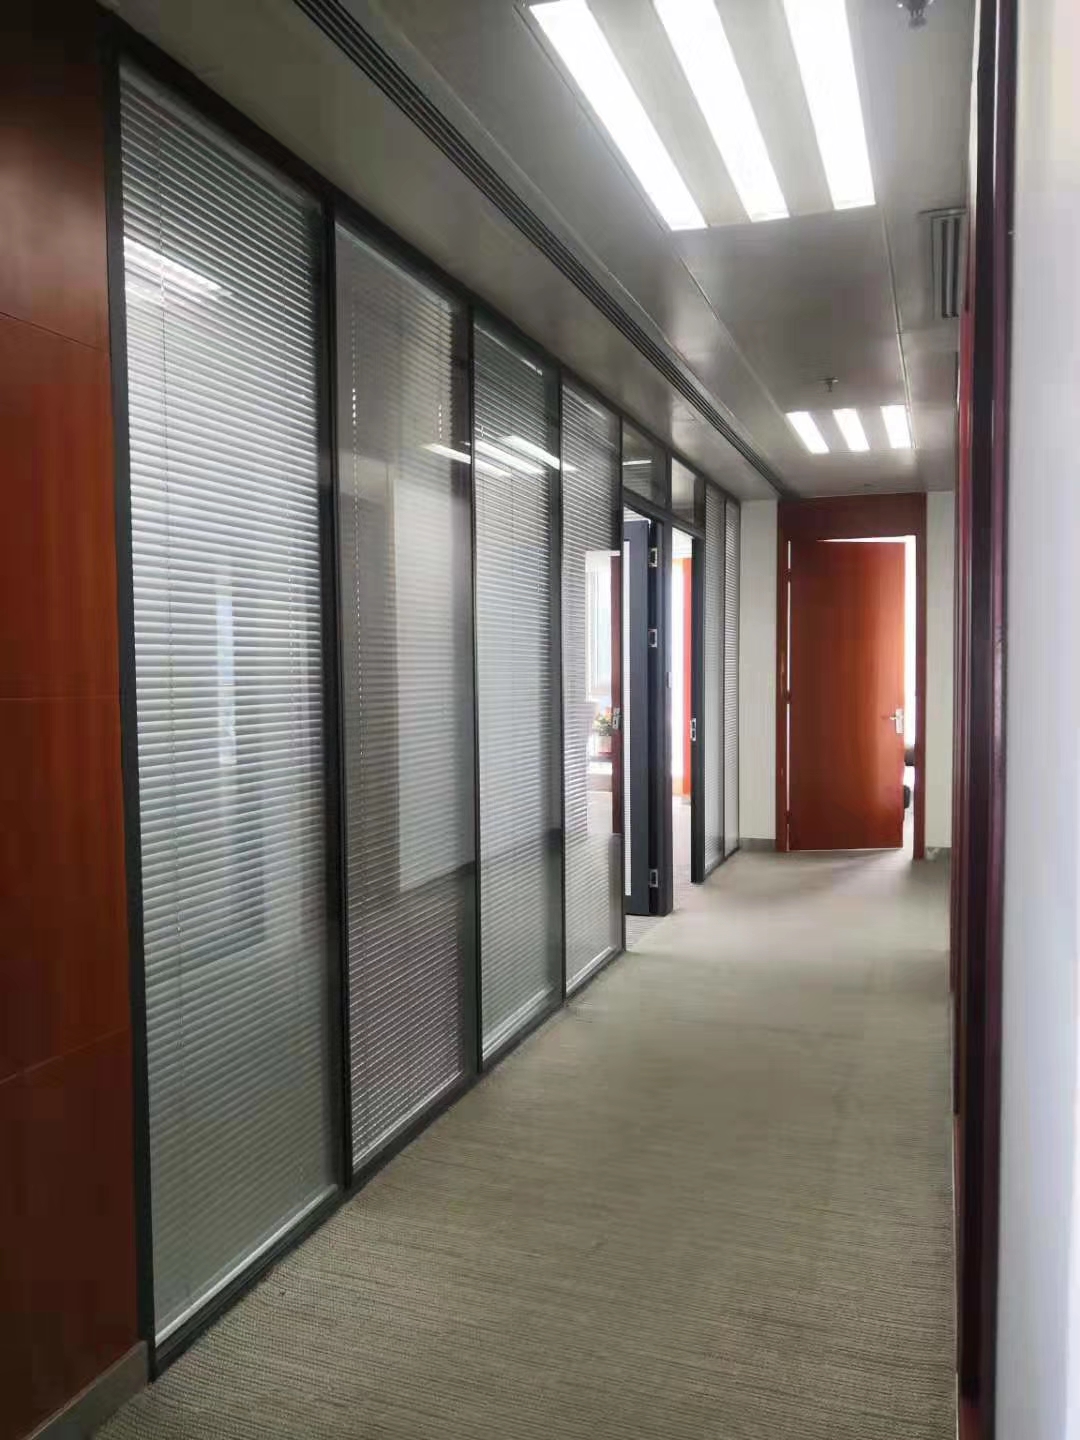 中山高隔断公司 会议室玻璃隔断生产